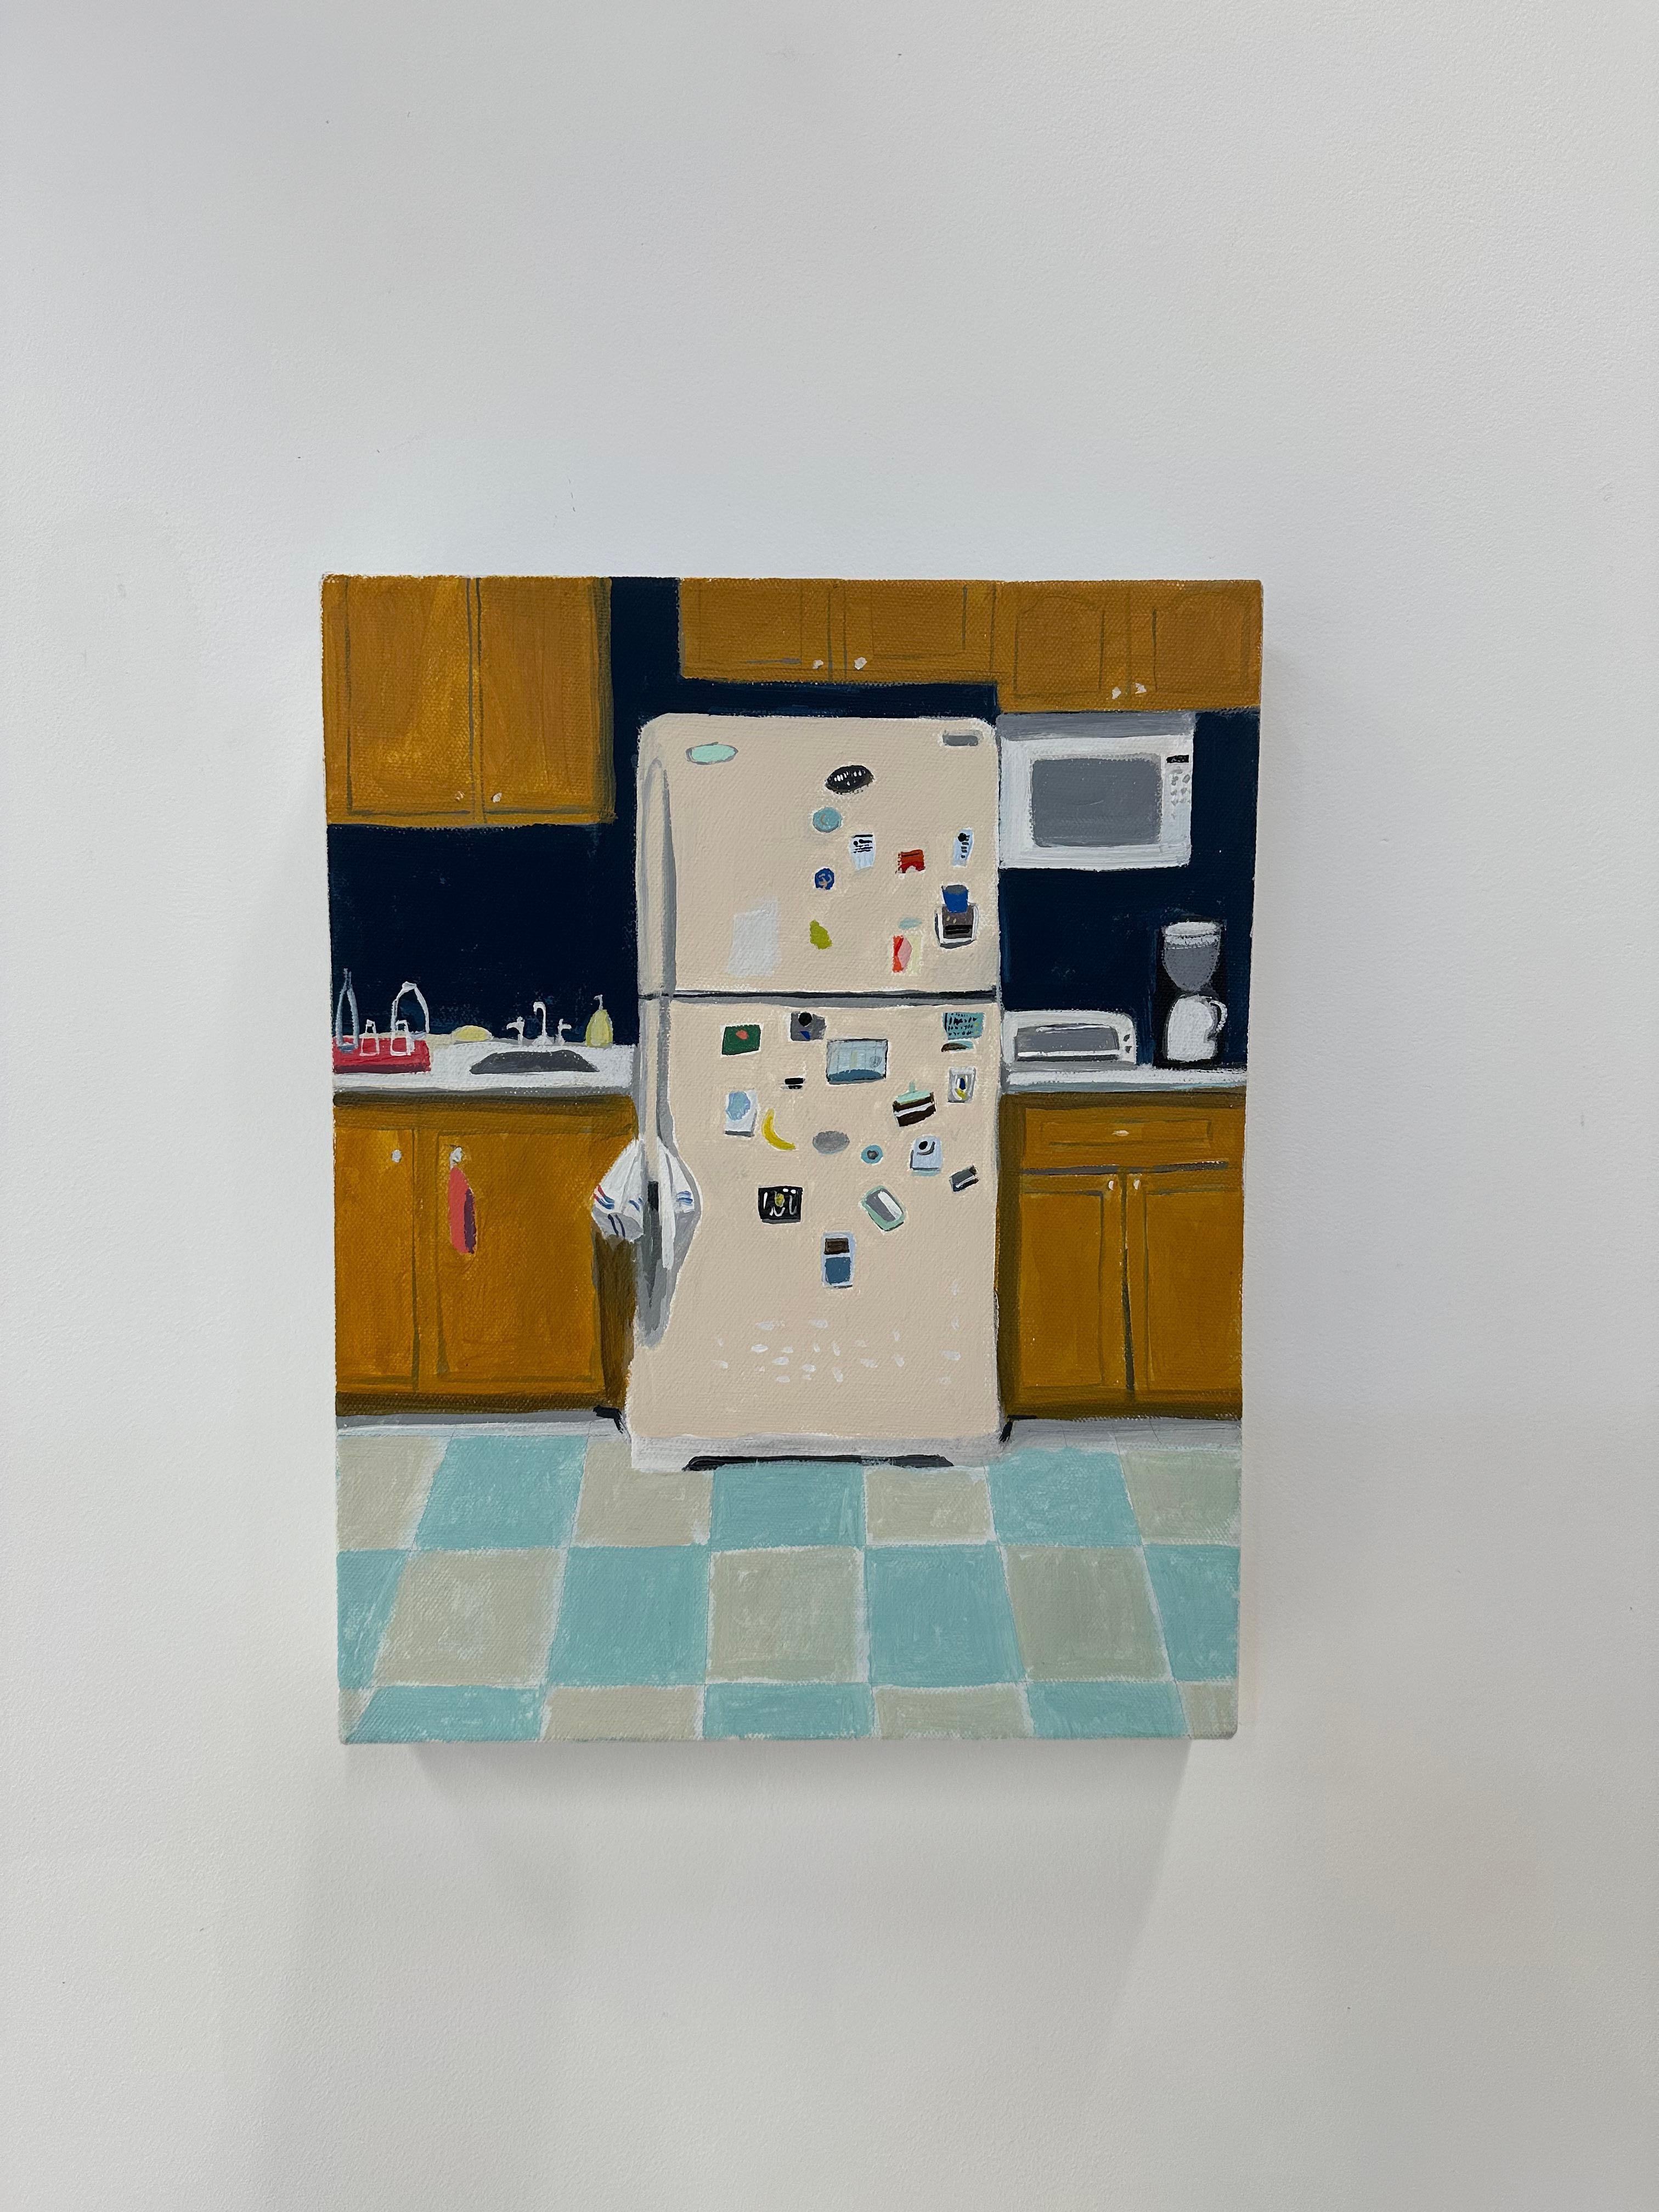 Pfirsichfarbener Reflektor, Kücheninterieur, gelbe Holzschränke, Kachelboden – Painting von Polly Shindler